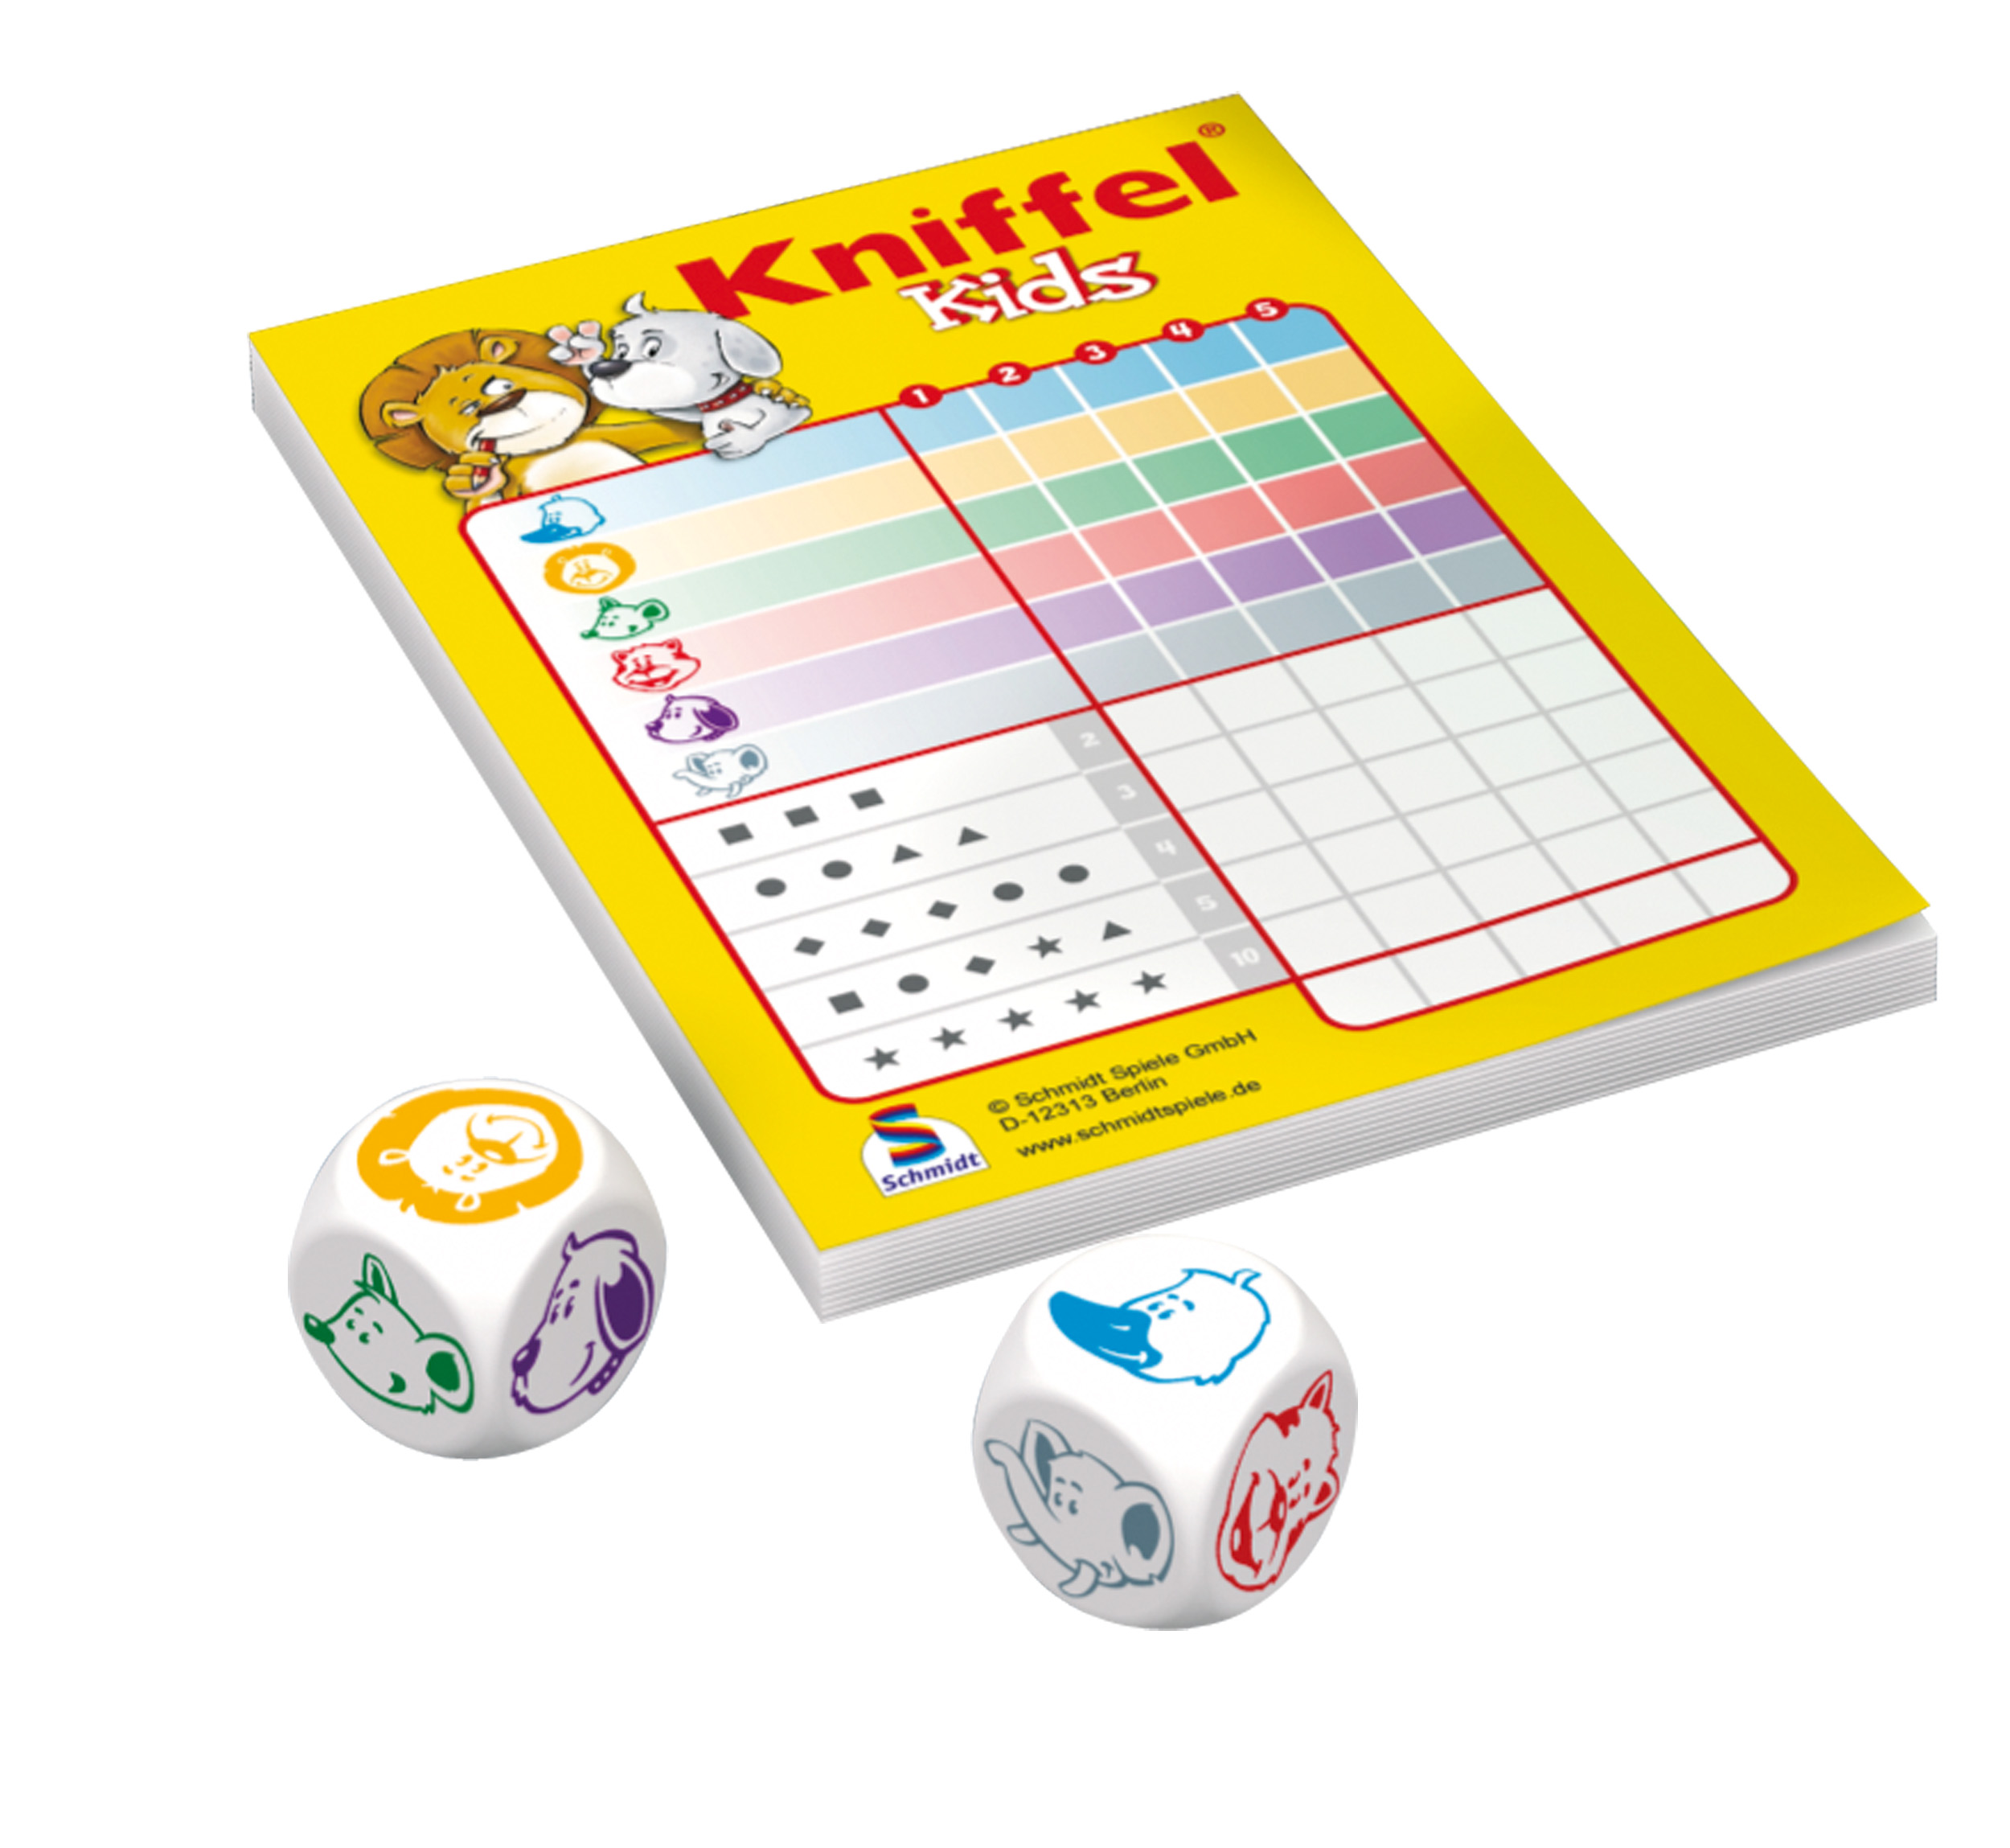 Kniffel® Kids - Bring-Mich-Mit-Spiel Metalldose in Gesellschaftsspiel SPIELE SCHMIDT